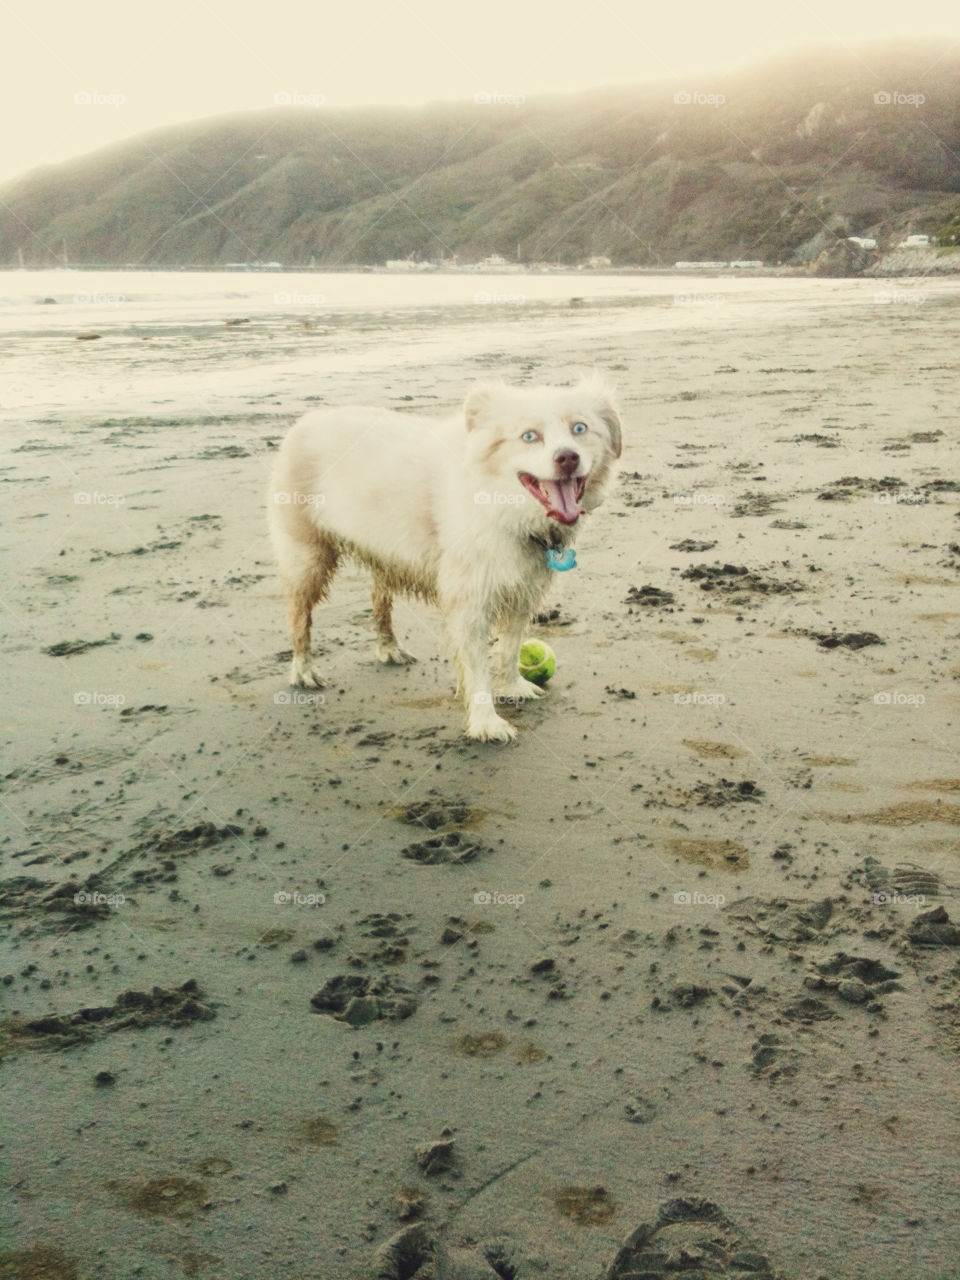 A dog with a ball on the beach.